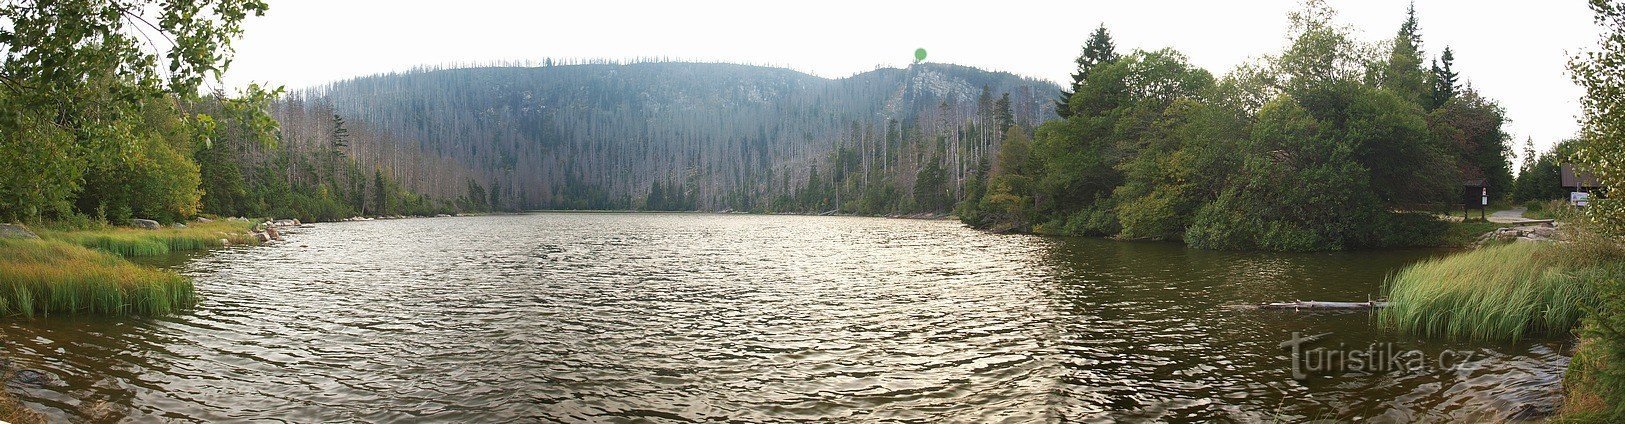 Φαλακρή λίμνη από το φράγμα της. Η πράσινη κουκκίδα δείχνει την άποψη με τον πέτρινο οβελί